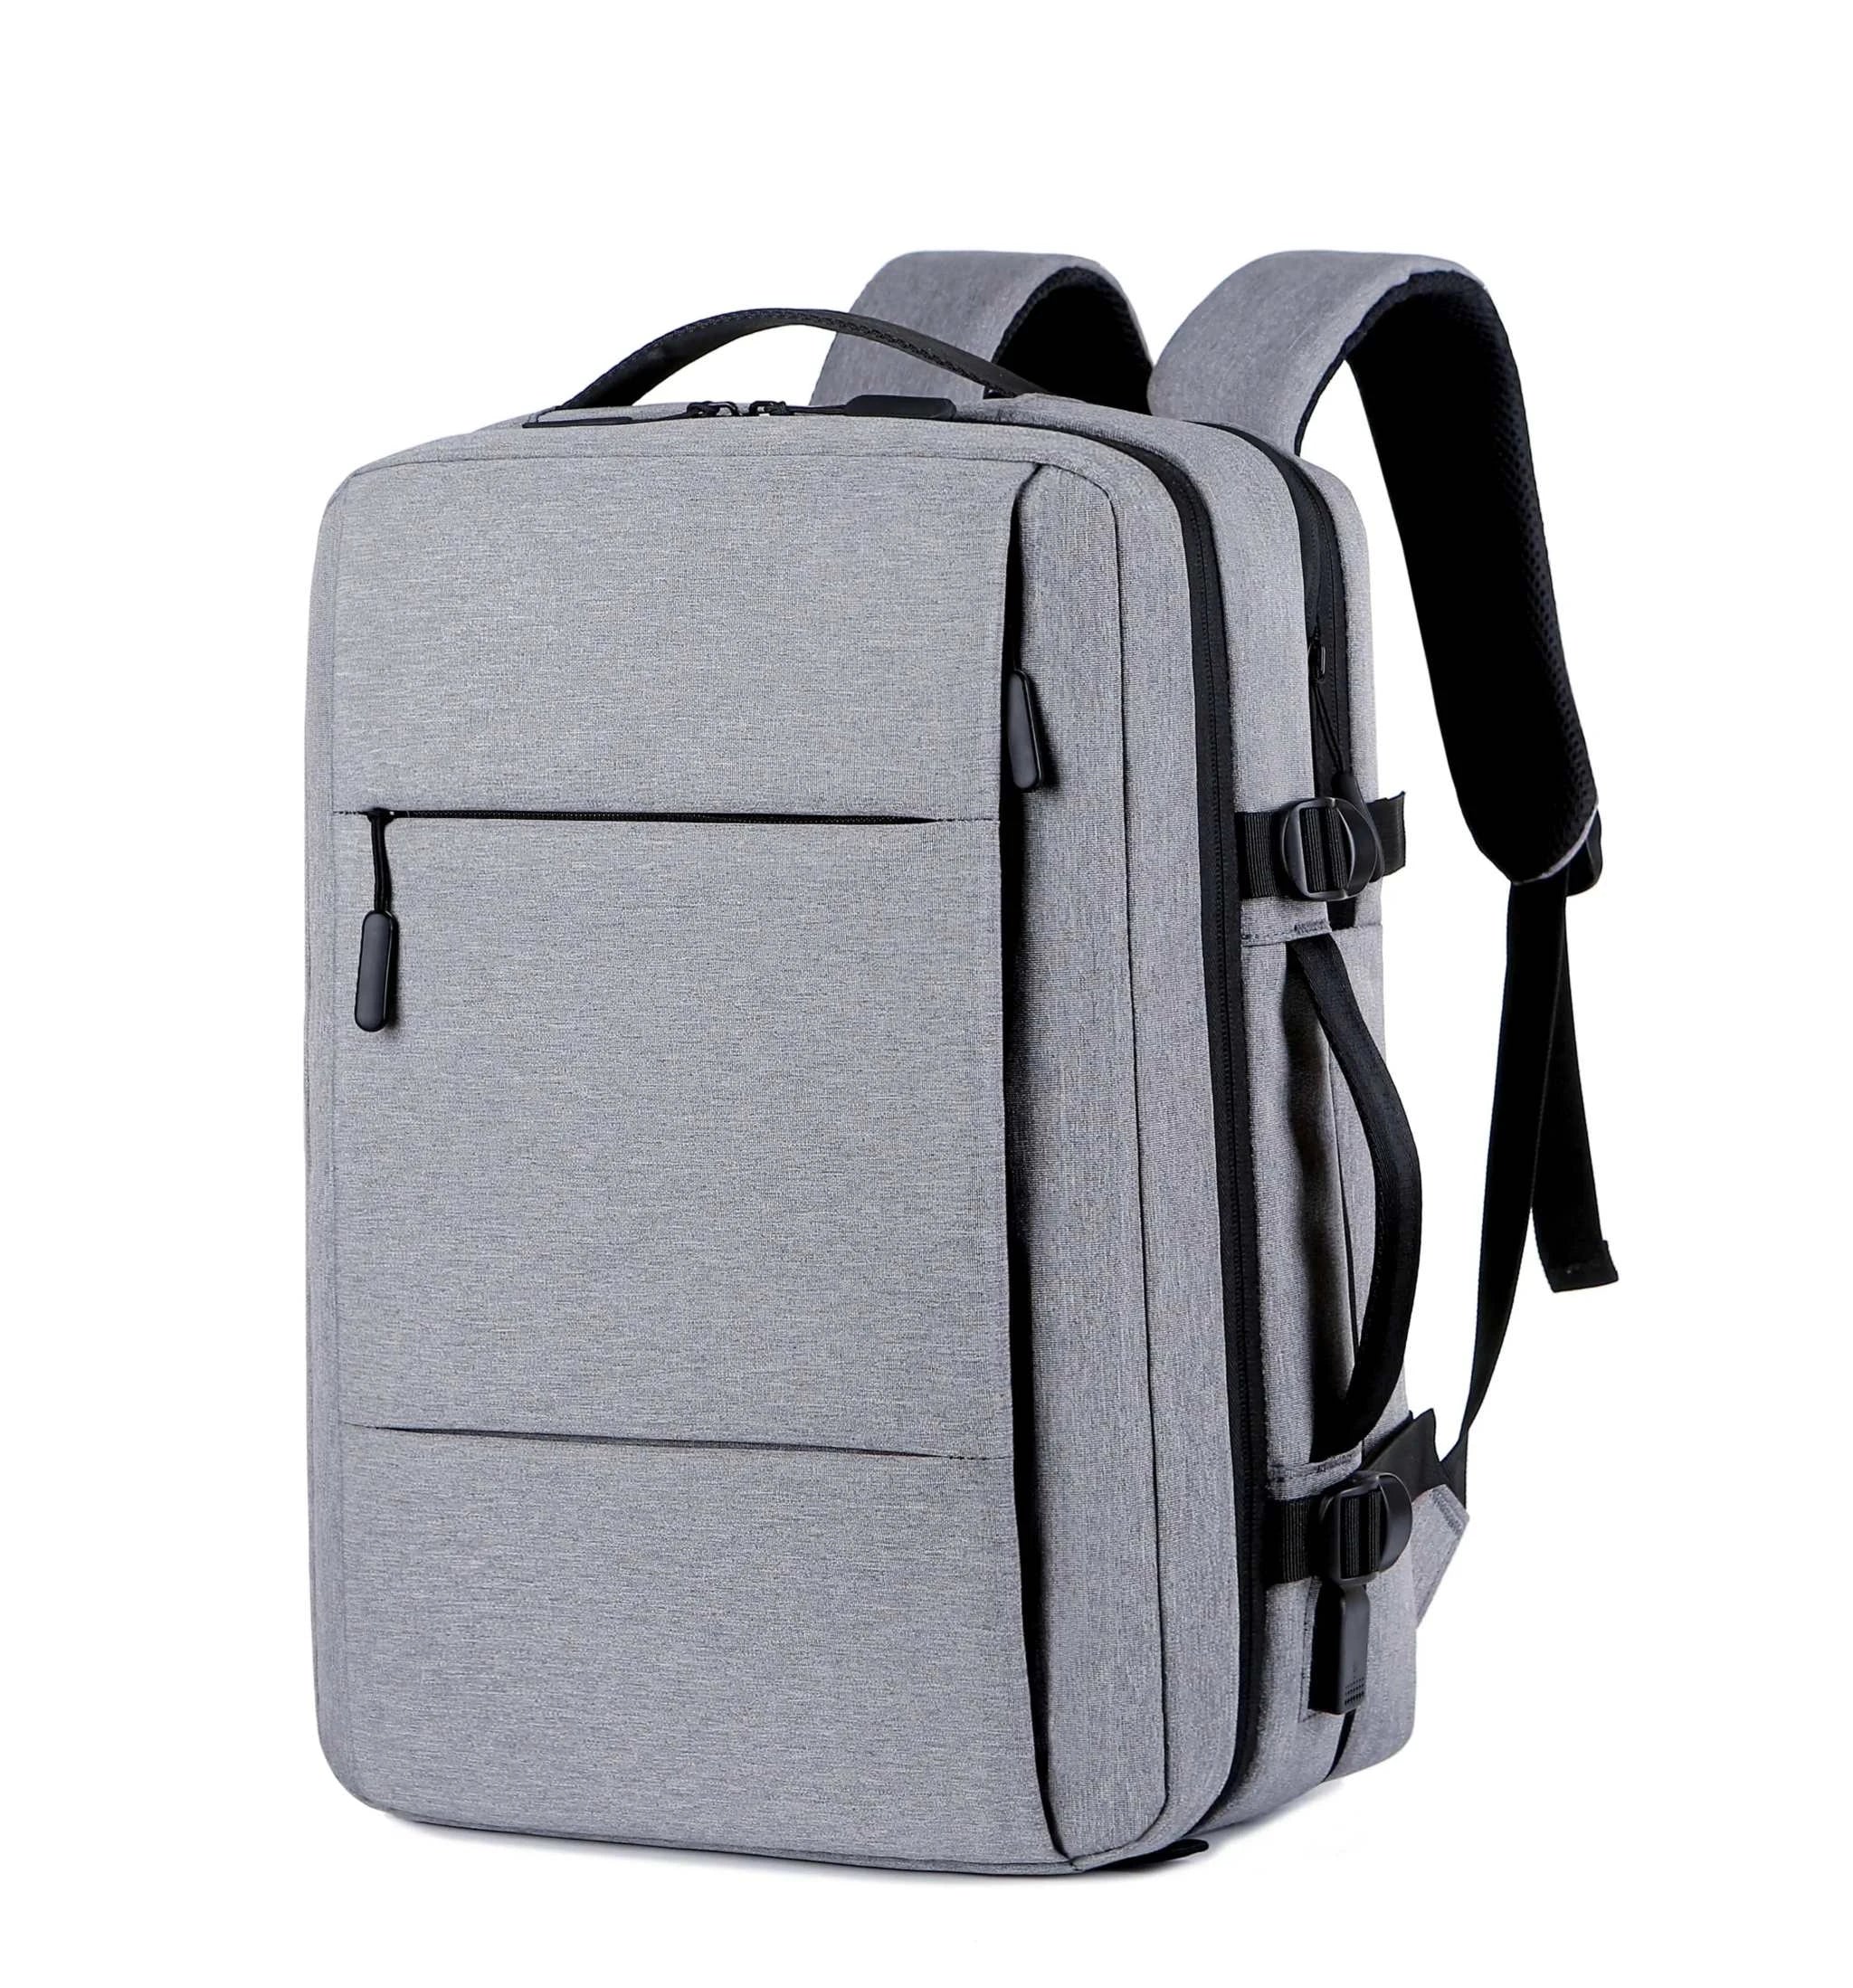 Scot Gifts Waterproof Backpack